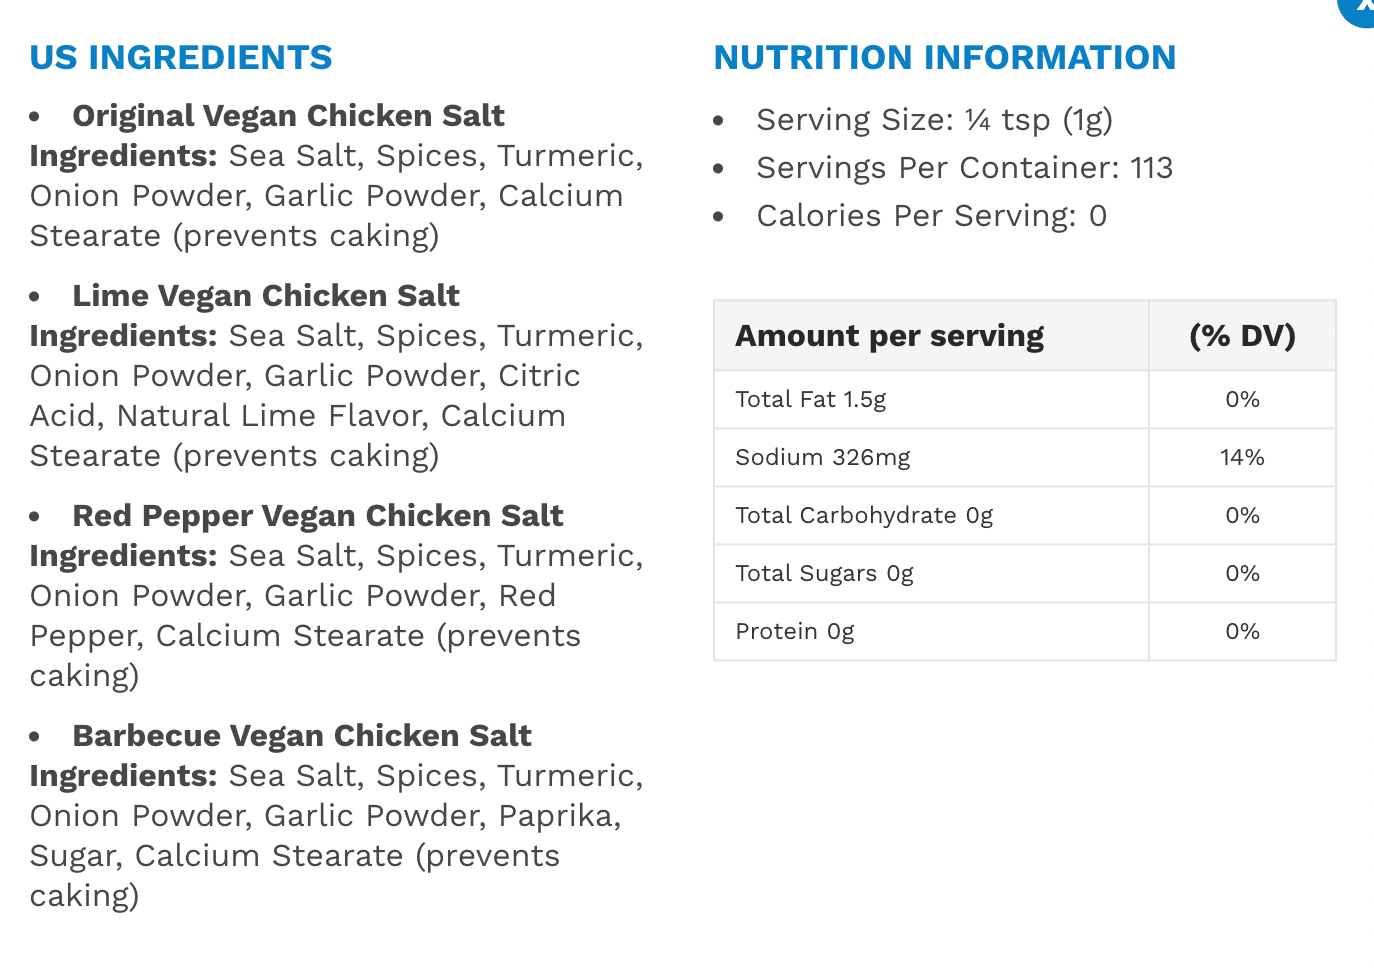 Vegan Chicken Salt LOW SODIUM - JADA SPICES - MSG FREE, GLUTEN FREE. – JADA  Brands